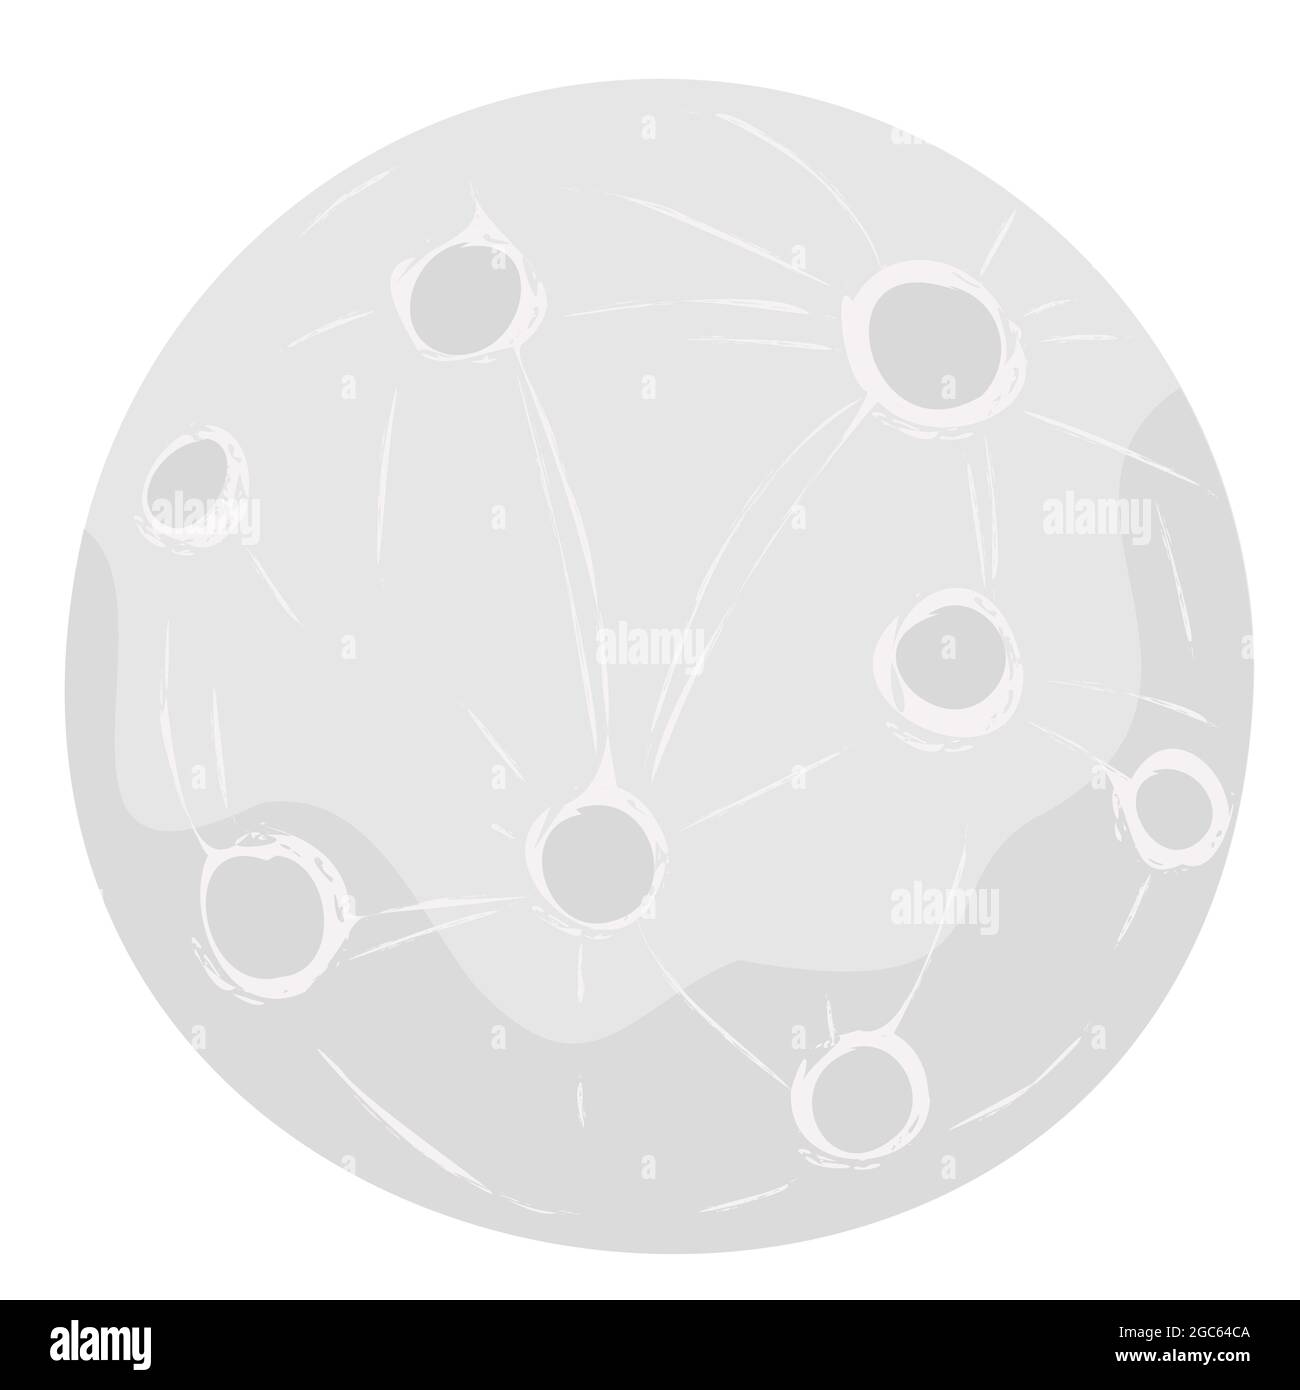 Illustrazione vettoriale a luna piena con crateri in stile cartone animato isolato jn backgeound bianco. Illustrazione Vettoriale